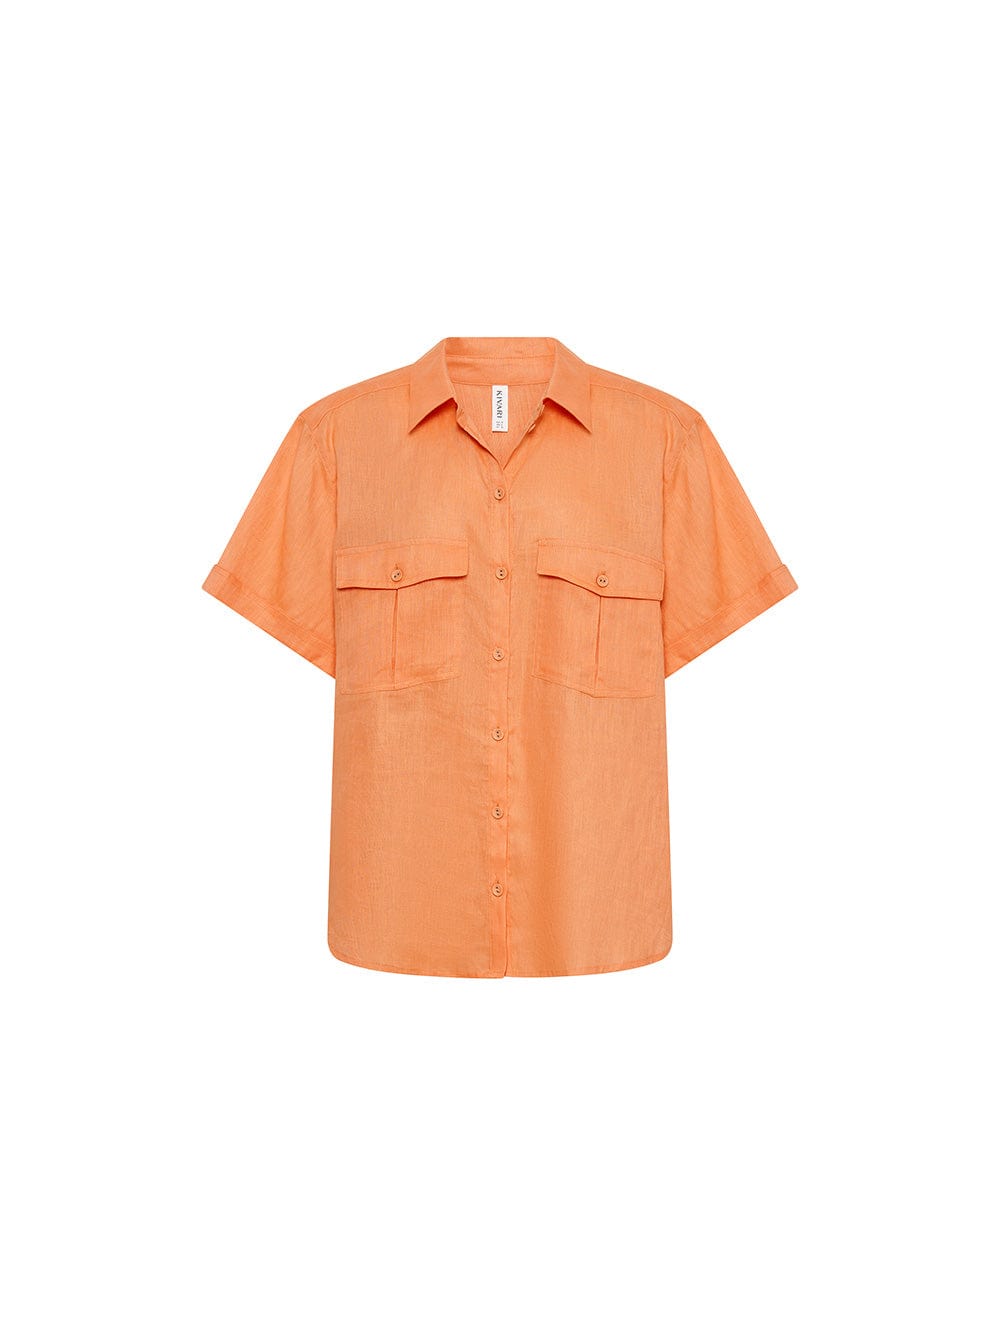 KIVARI Eve Shirt | Orange Shirt